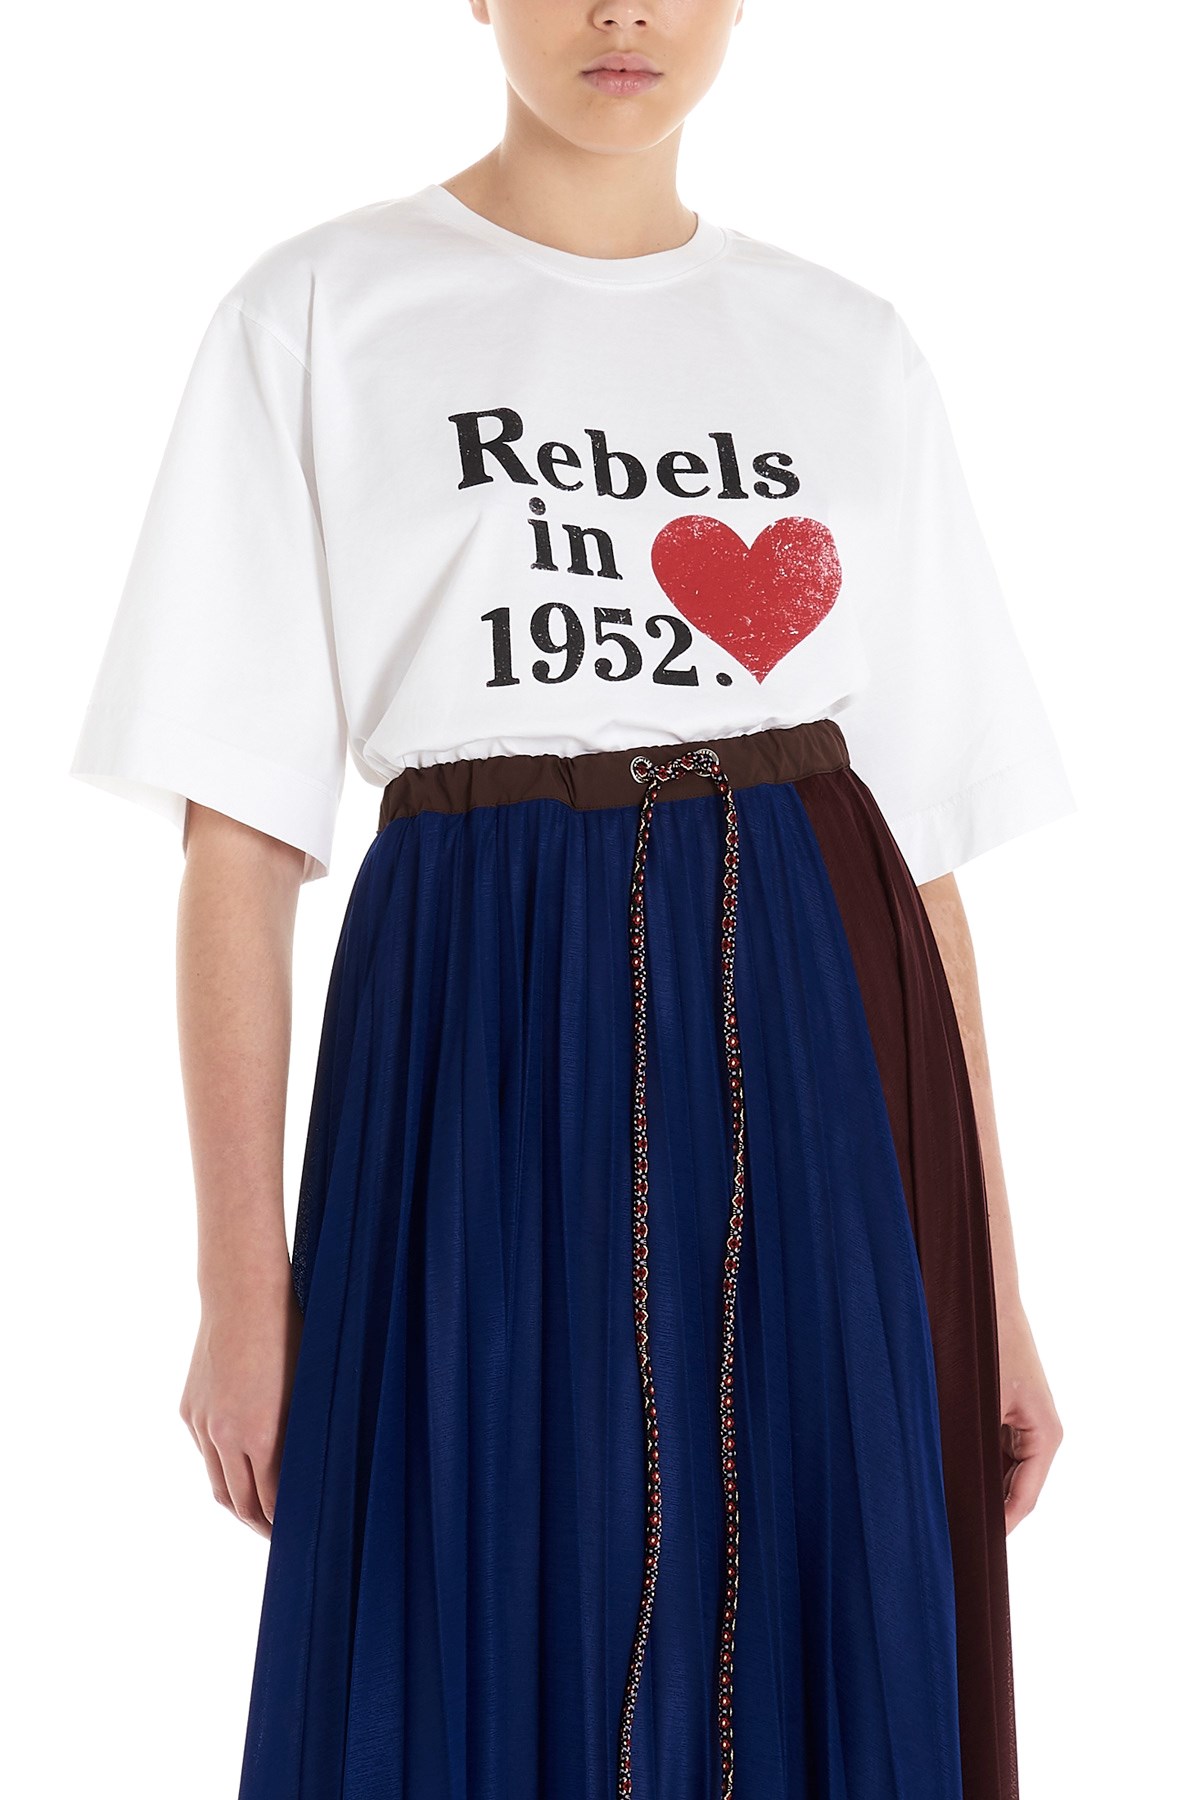 MONCLER GENIUS Moncler Genius 1952 'Rebels In 1952' T-Shirt